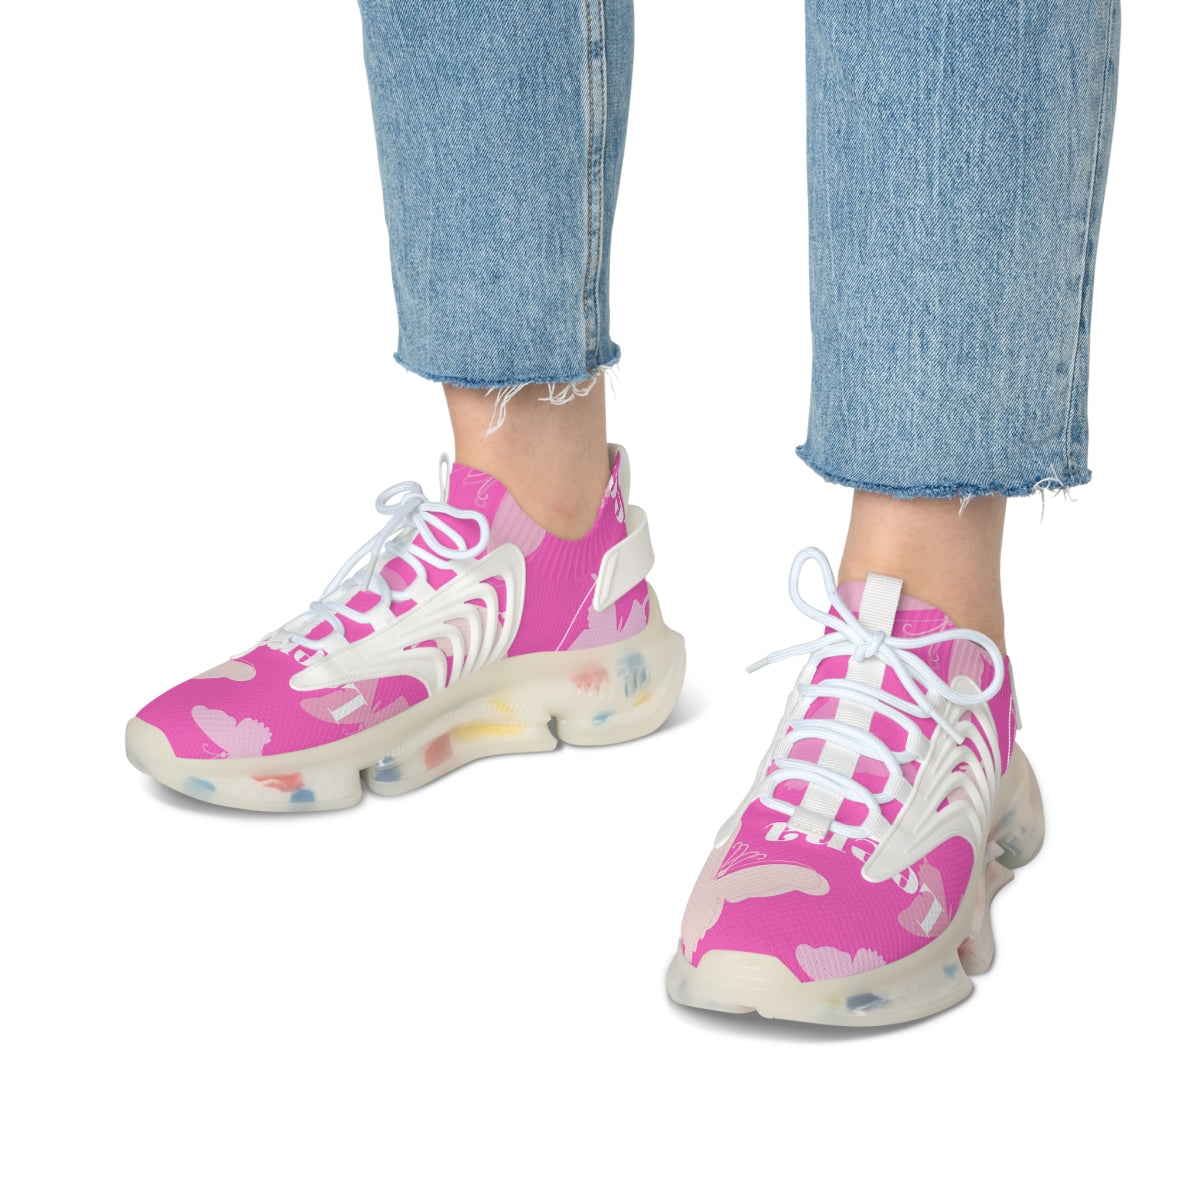 Women's Mesh Sneakers